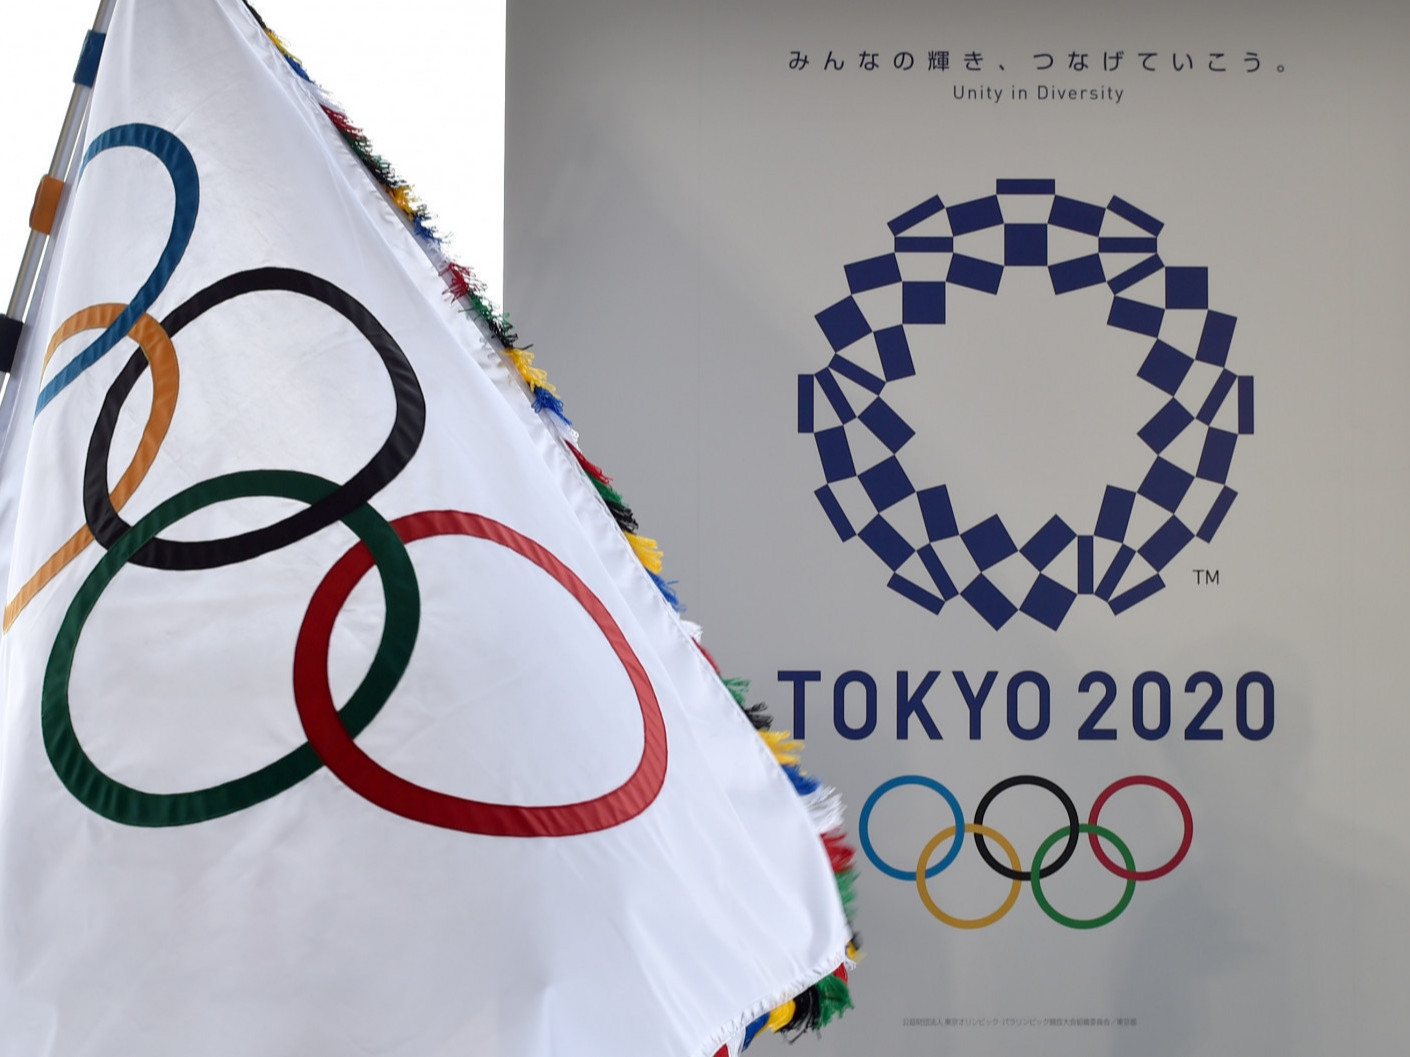 Олимпийн нээлтийн ёслол өнөөдөр 19:00 цагаас эхэлнэ